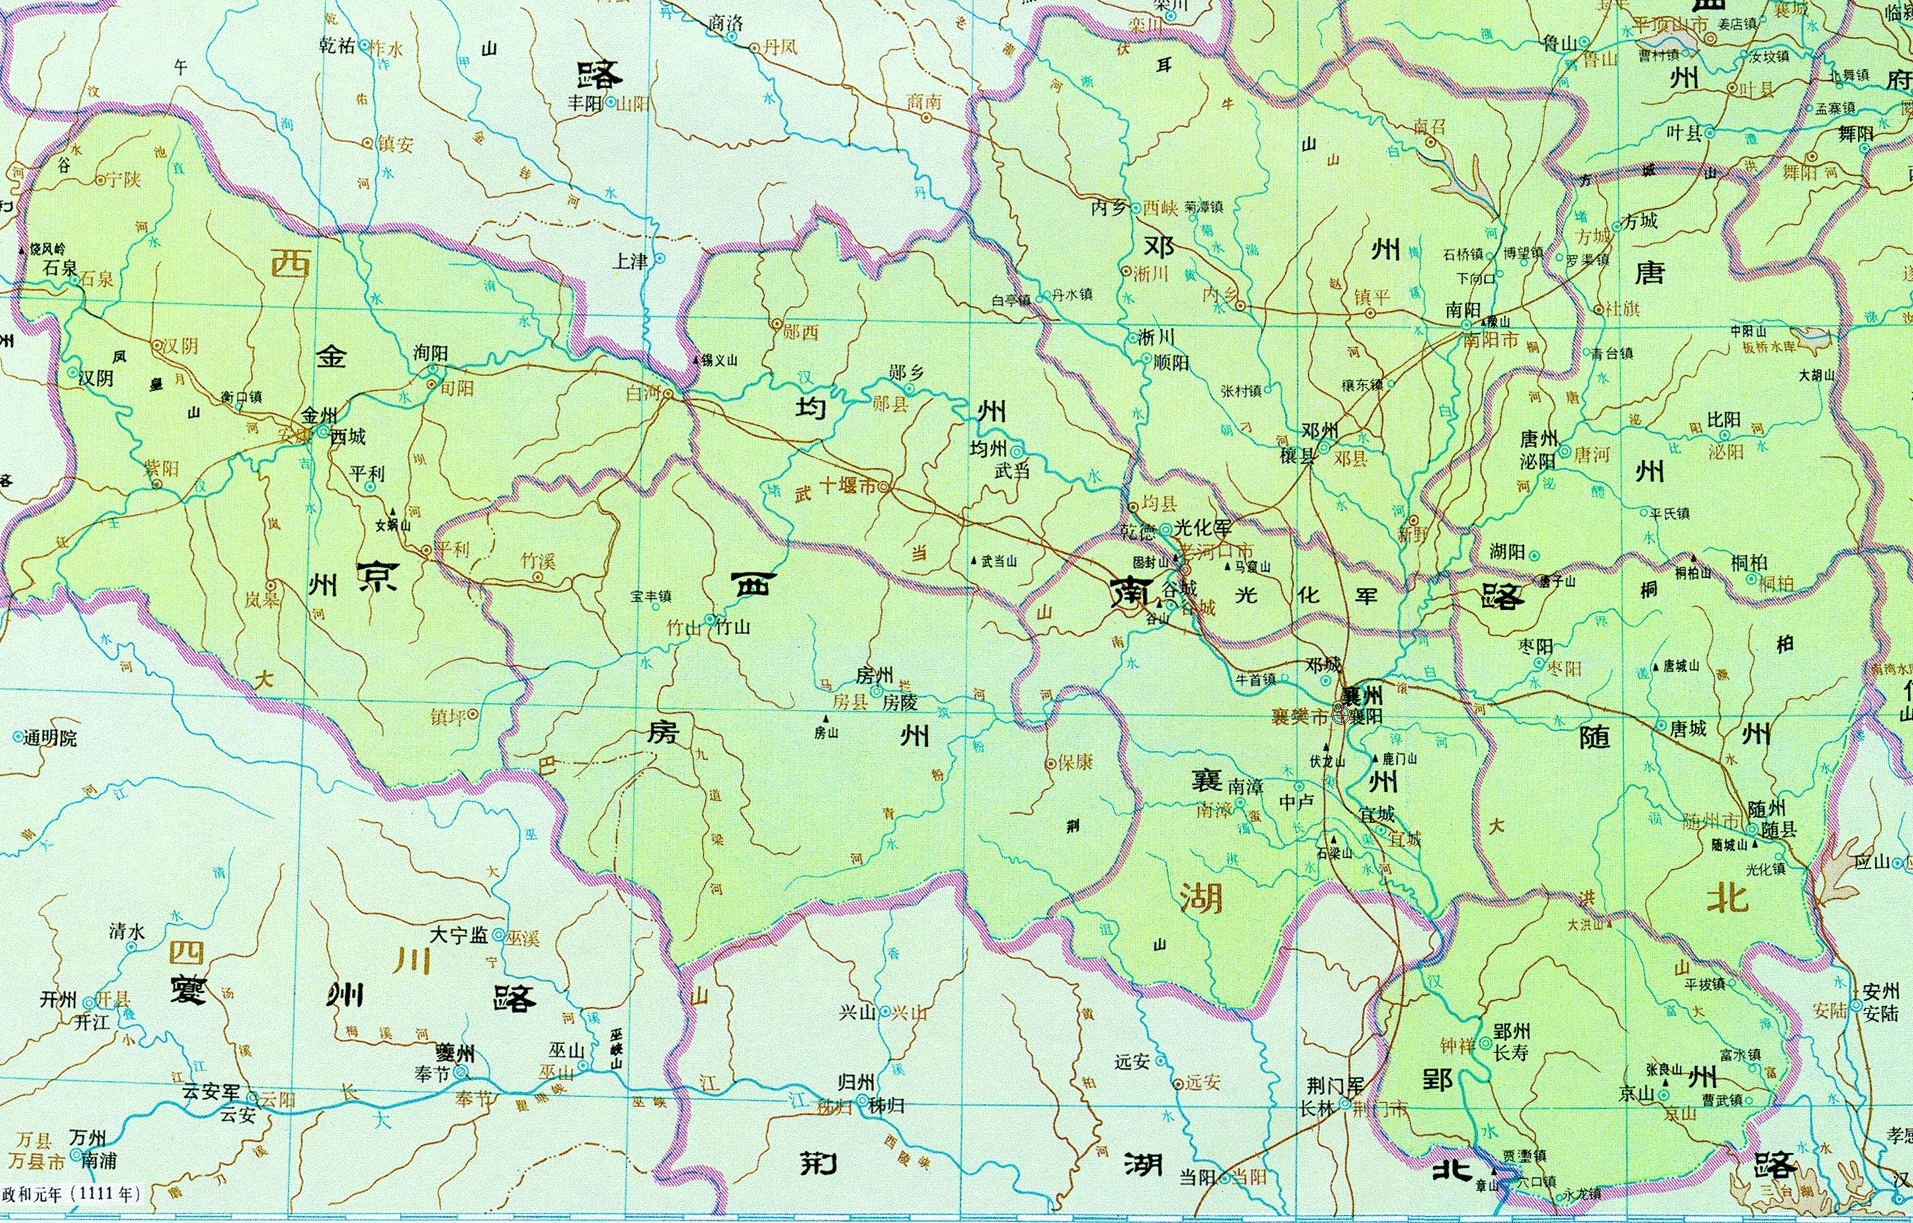 北宋二十五路行政区地图(含人口,面积及辖内府,州,军名)